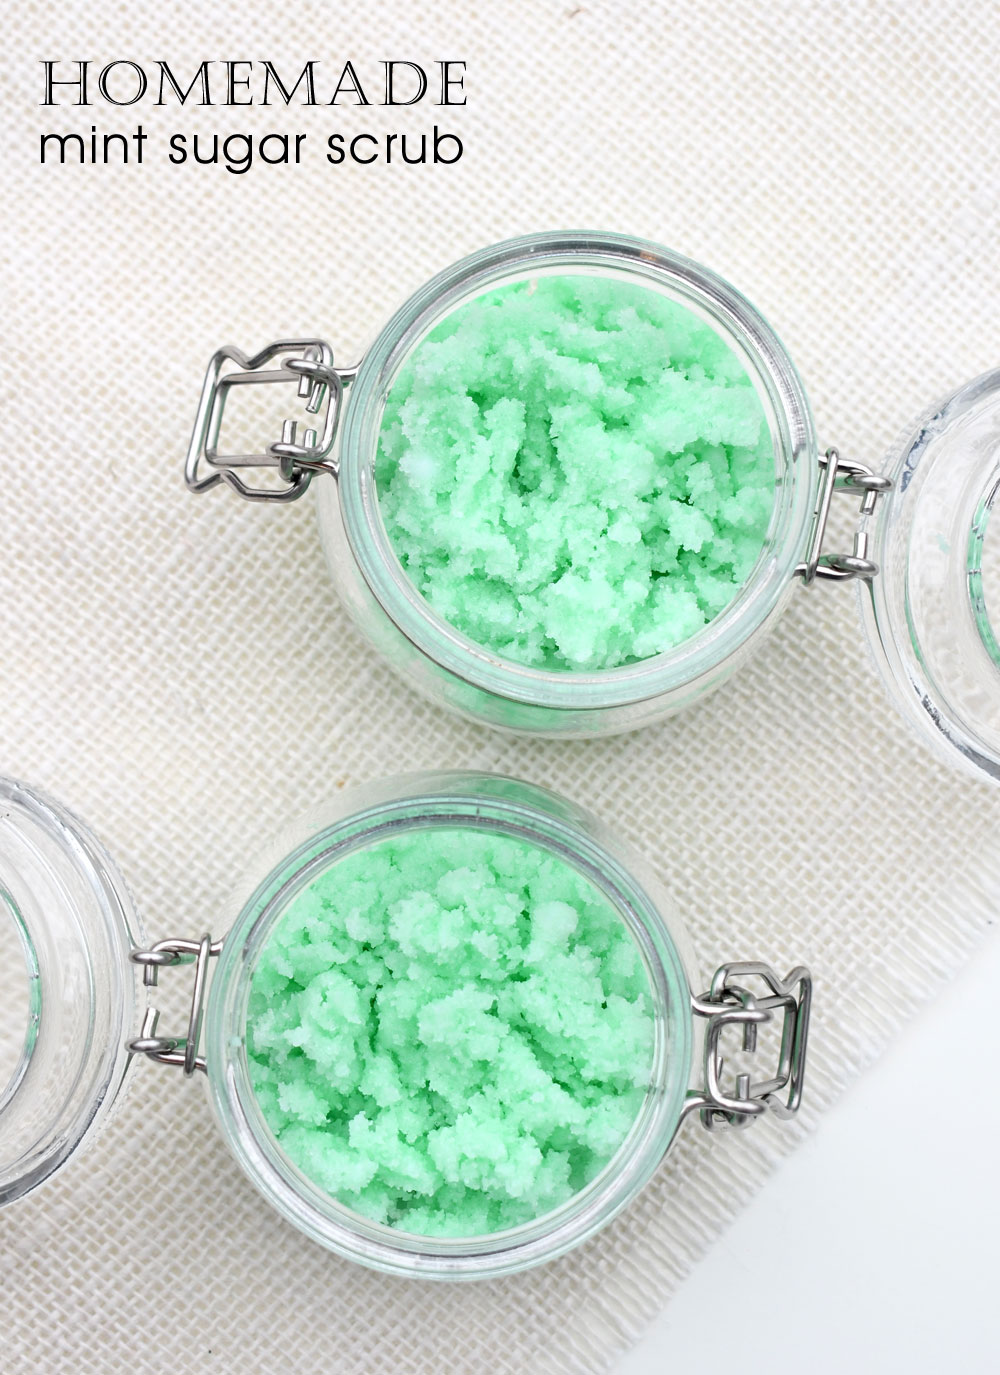 DIY mint sugar scrub recipe and gift idea